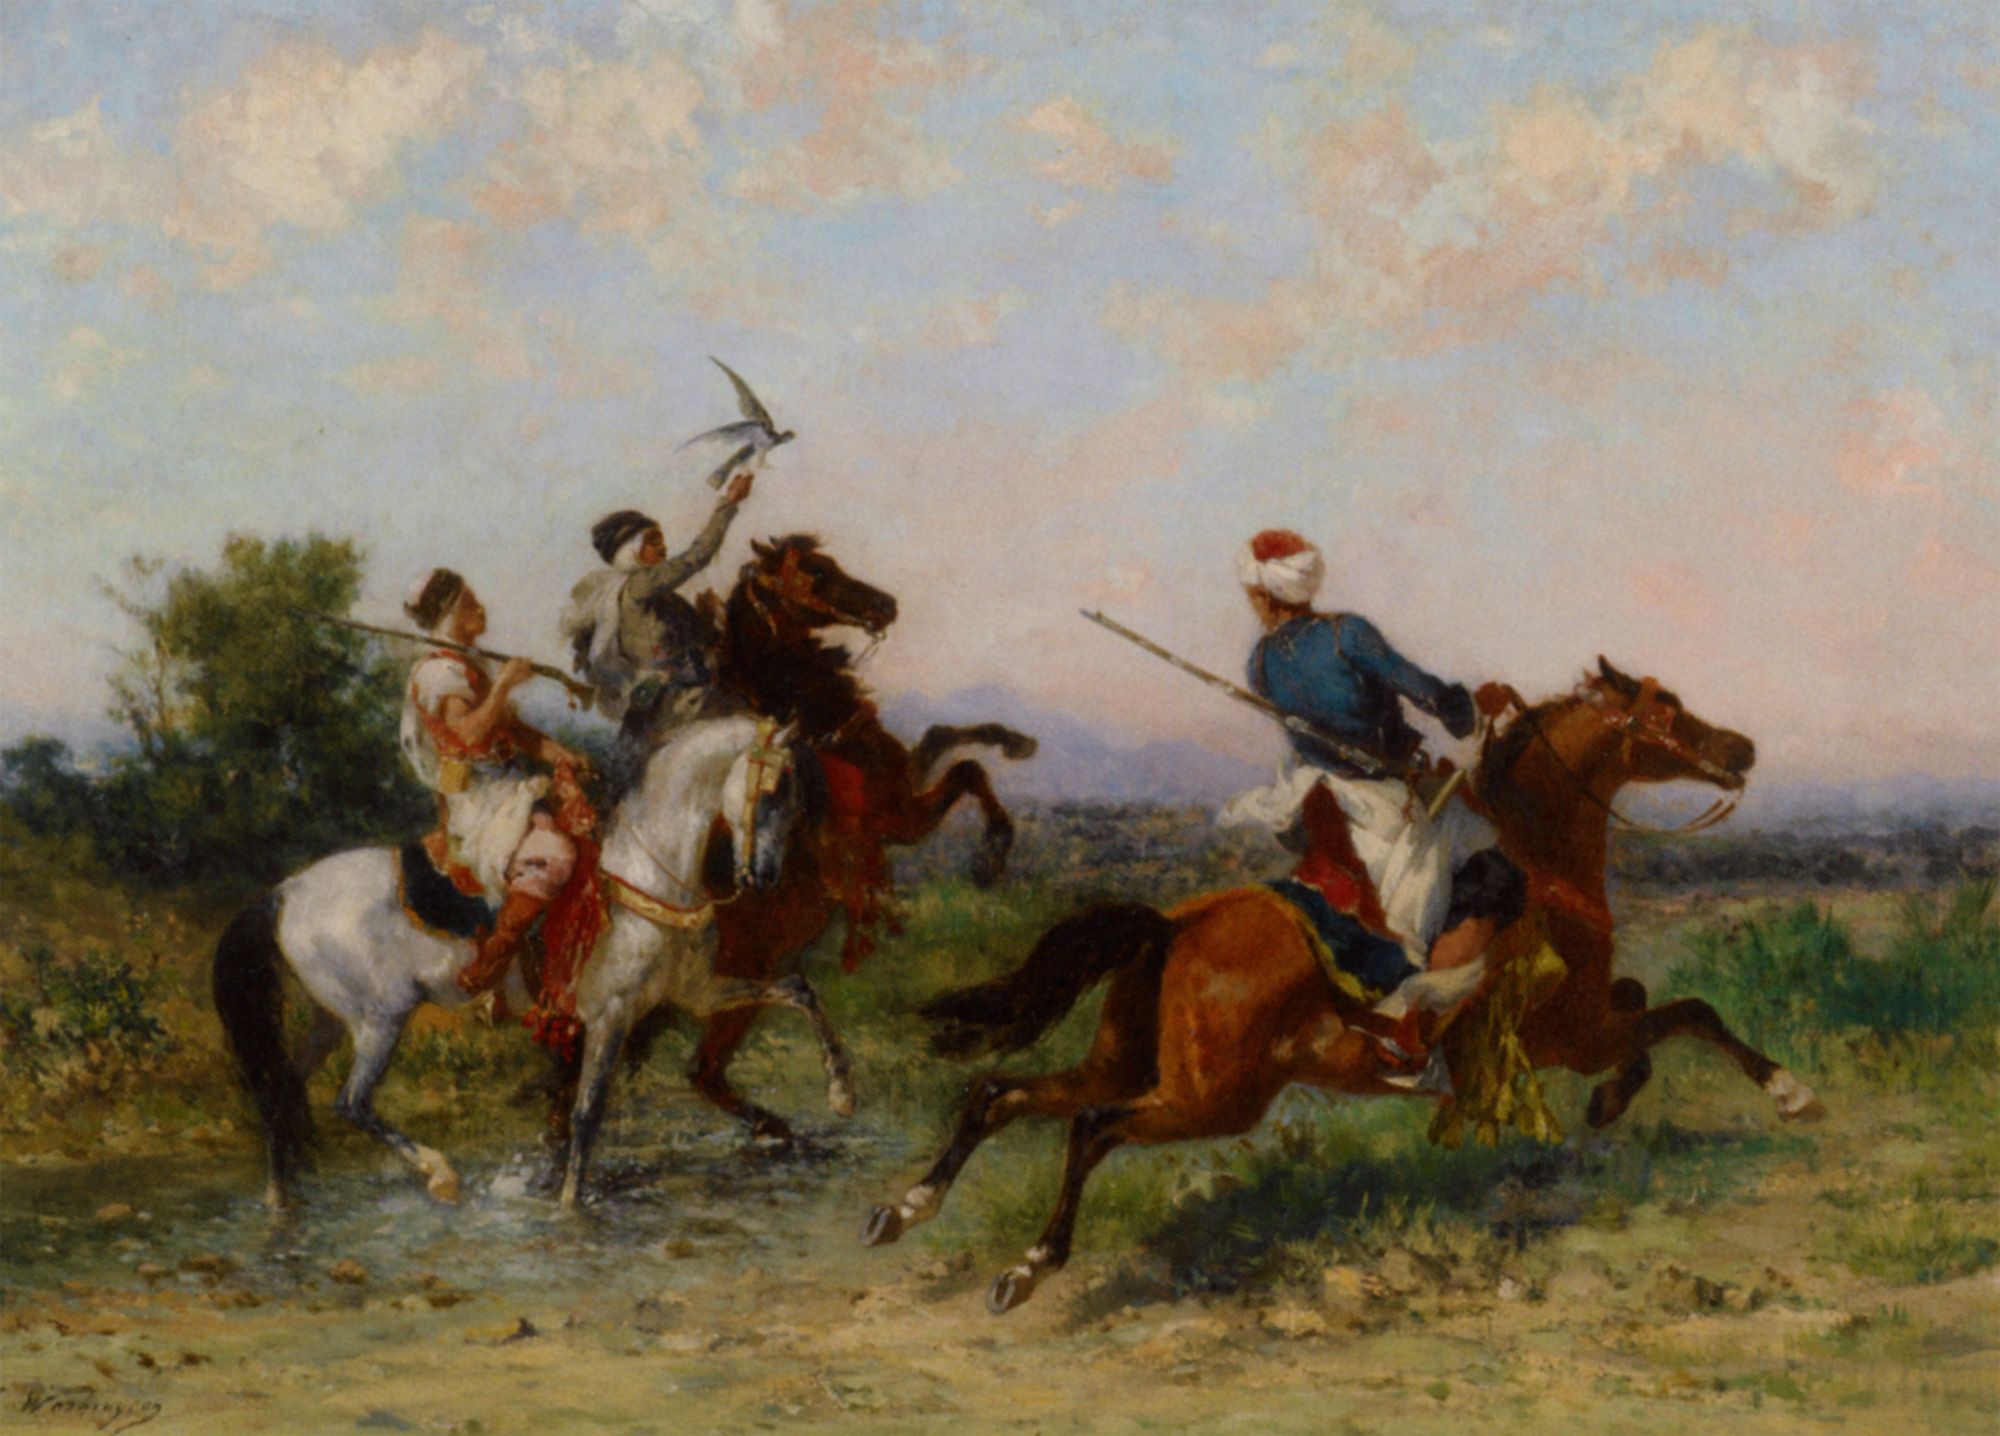 La Chasse au Faucon by Georges Washington